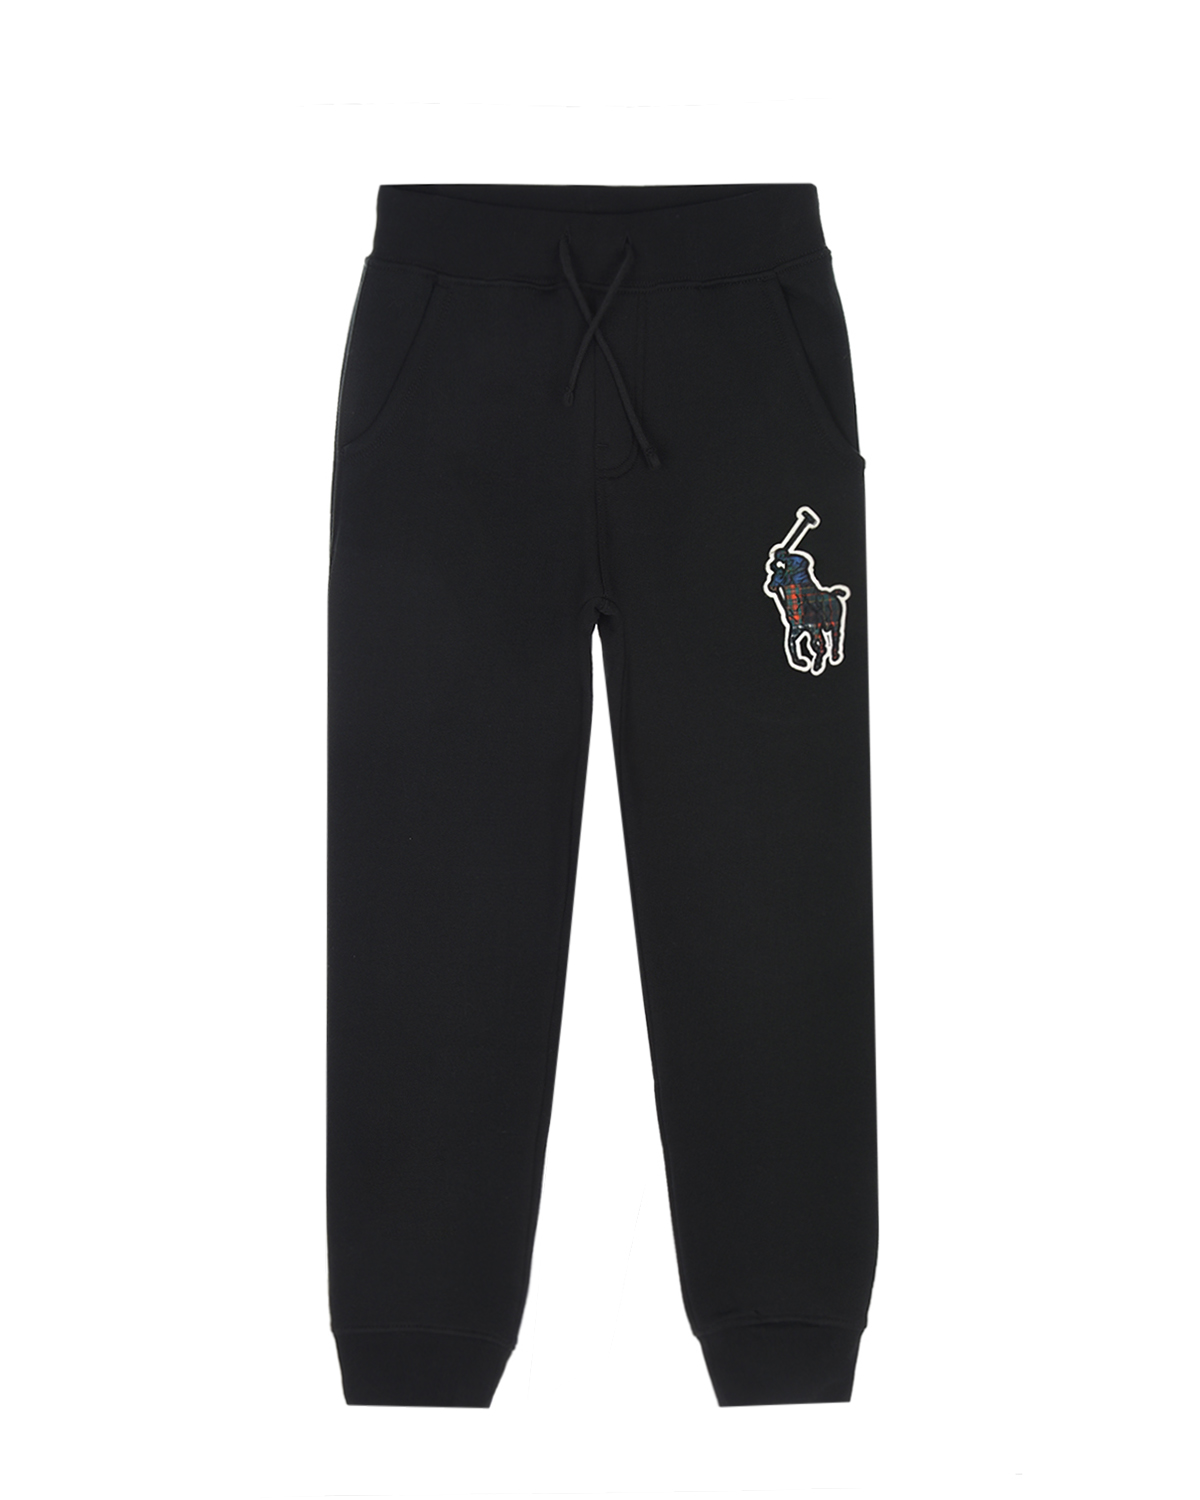 Спортивные брюки с логотипом Ralph Lauren детские, размер 128, цвет черный - фото 1